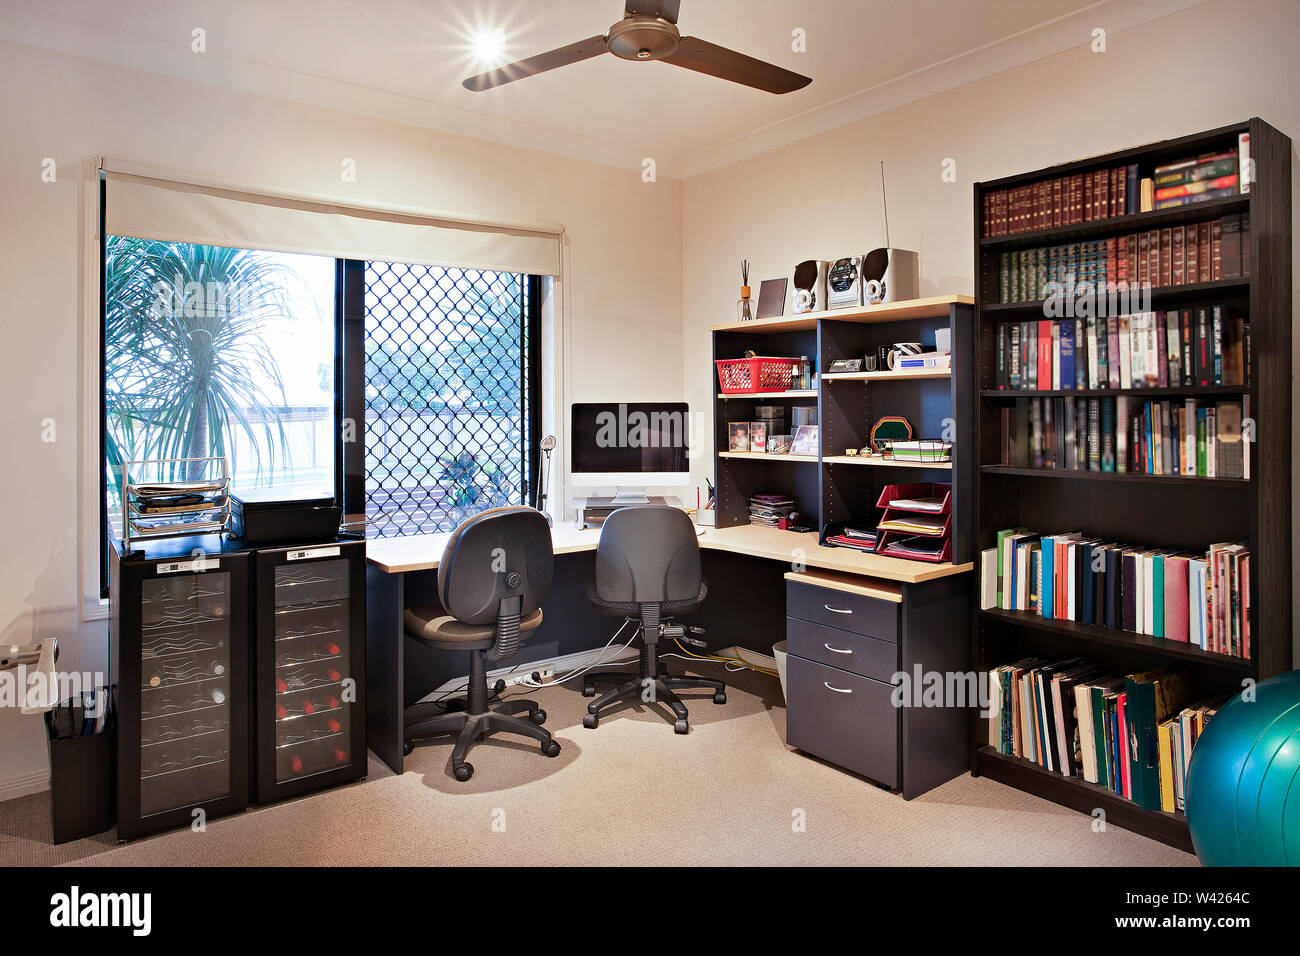 Arbeitszimmer mit Bücher und Computer, komfortable Möbel mit Designs, die Wände sind weiß, die Kissen auf Stühlen, innere Räume einer Wohnung. Stockfoto